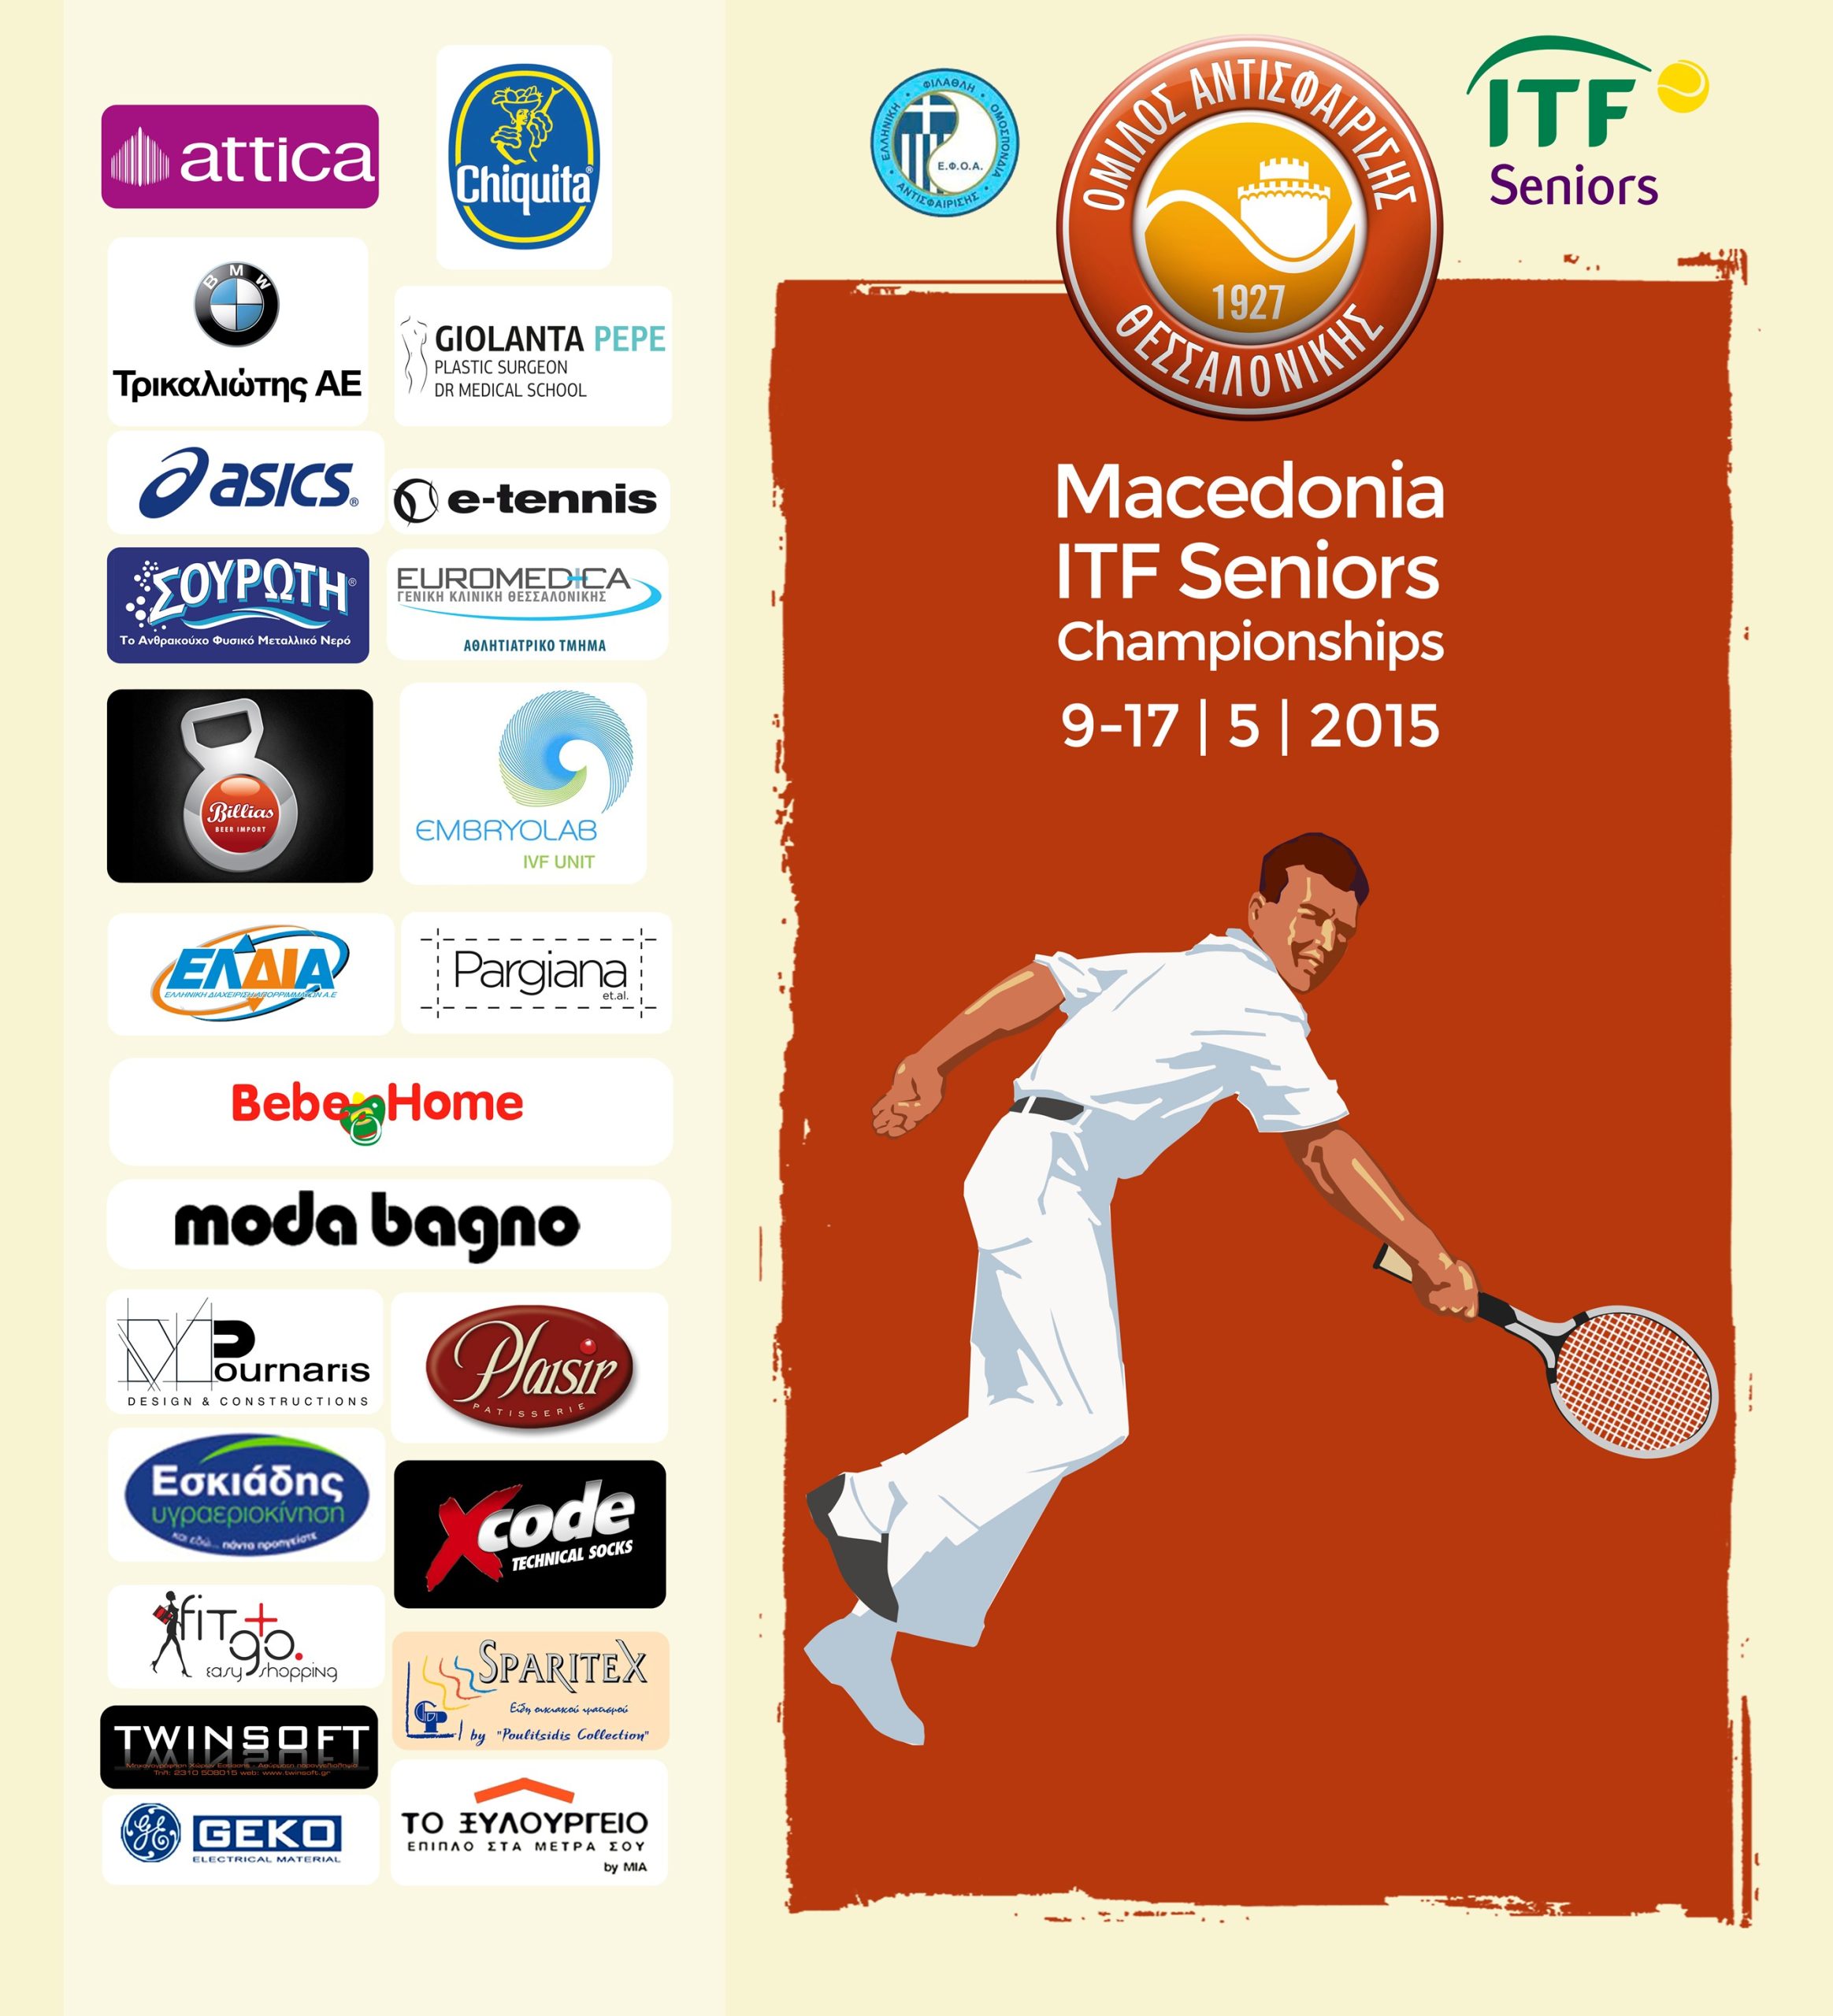 MACEDONIA 2015